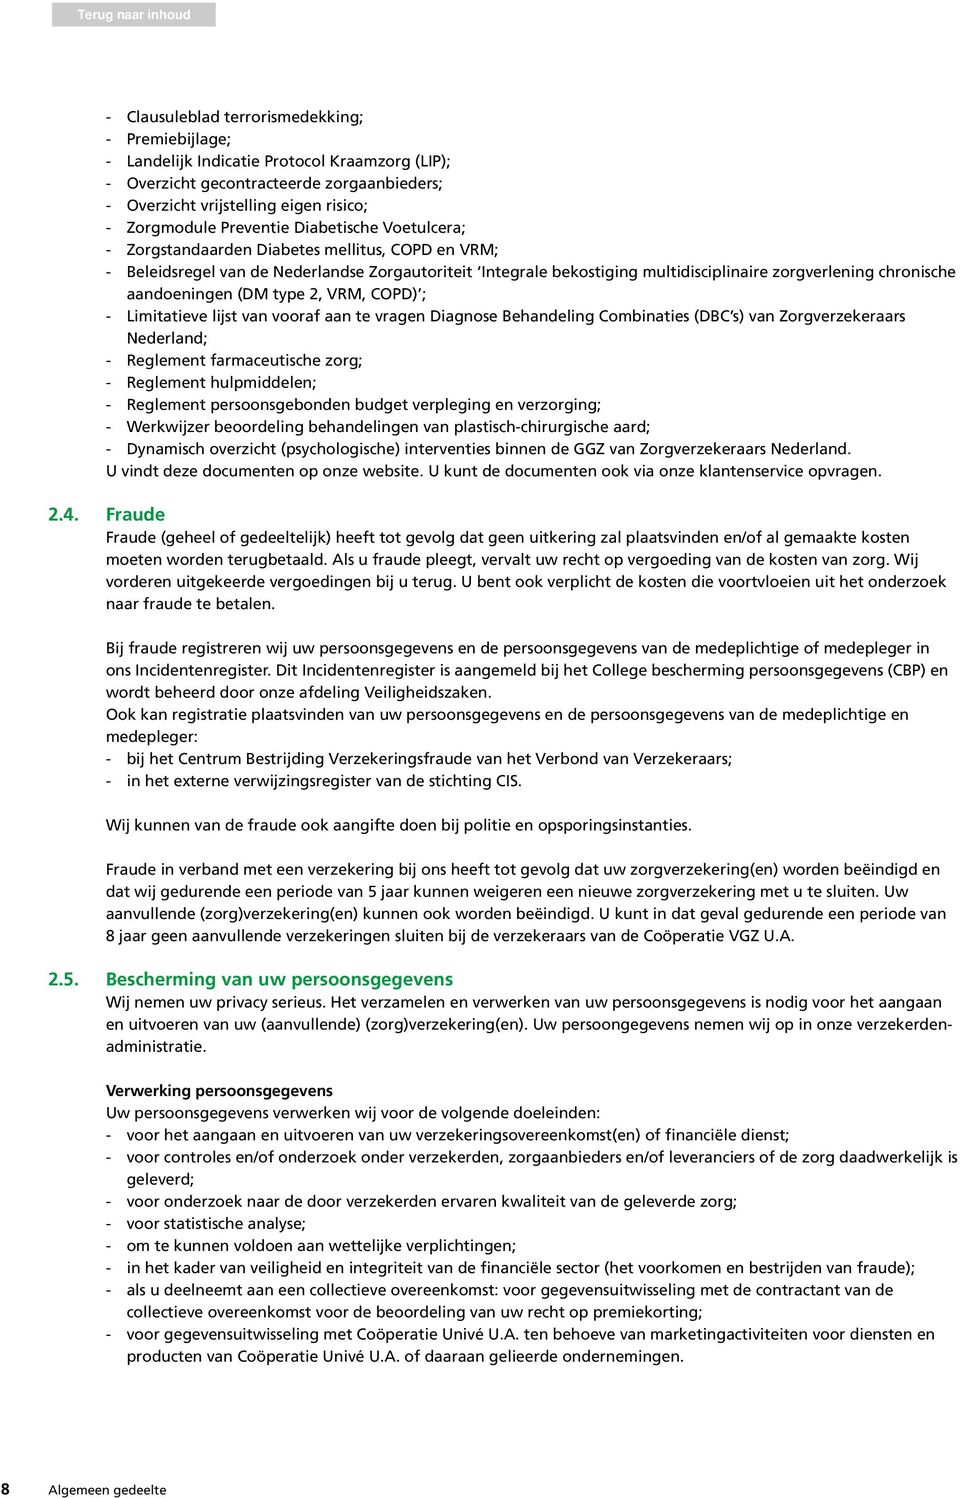 aandoeningen (DM type 2, VRM, COPD) ; - Limitatieve lijst van vooraf aan te vragen Diagnose Behandeling Combinaties (DBC s) van Zorgverzekeraars Nederland; - Reglement farmaceutische zorg; -